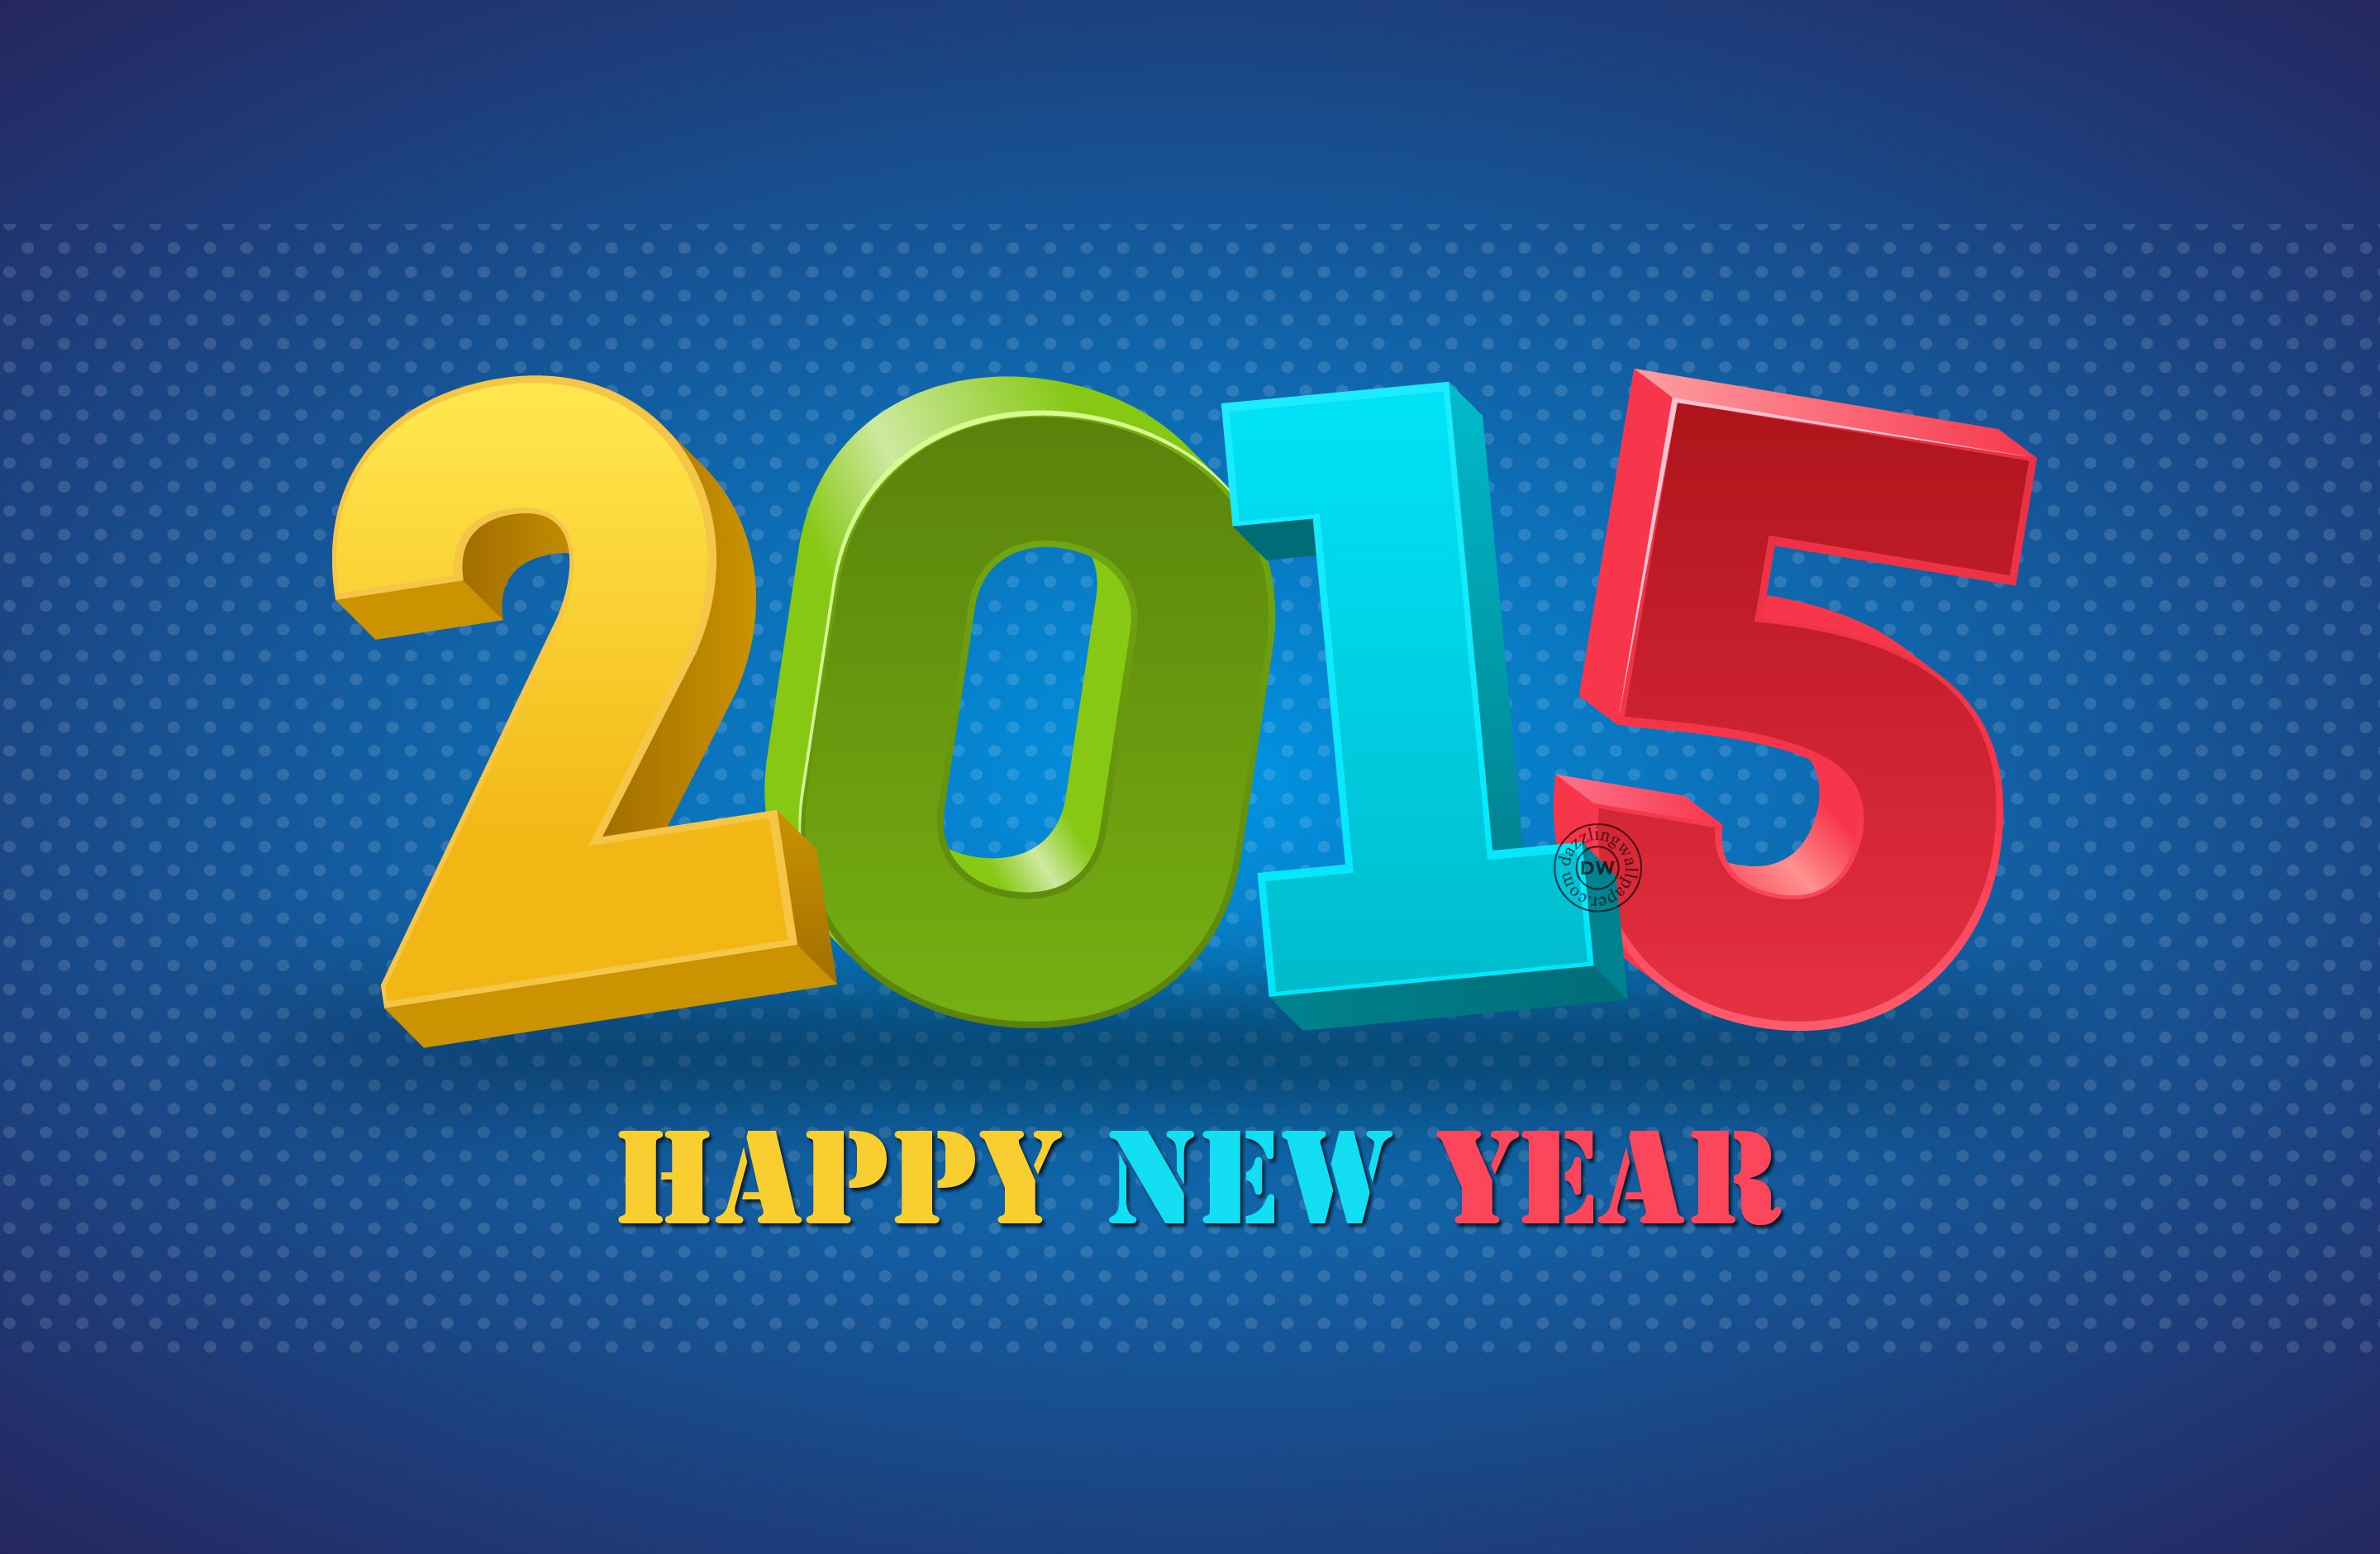 new year collection new year 2015 new year 2015 new year 2015 hd new